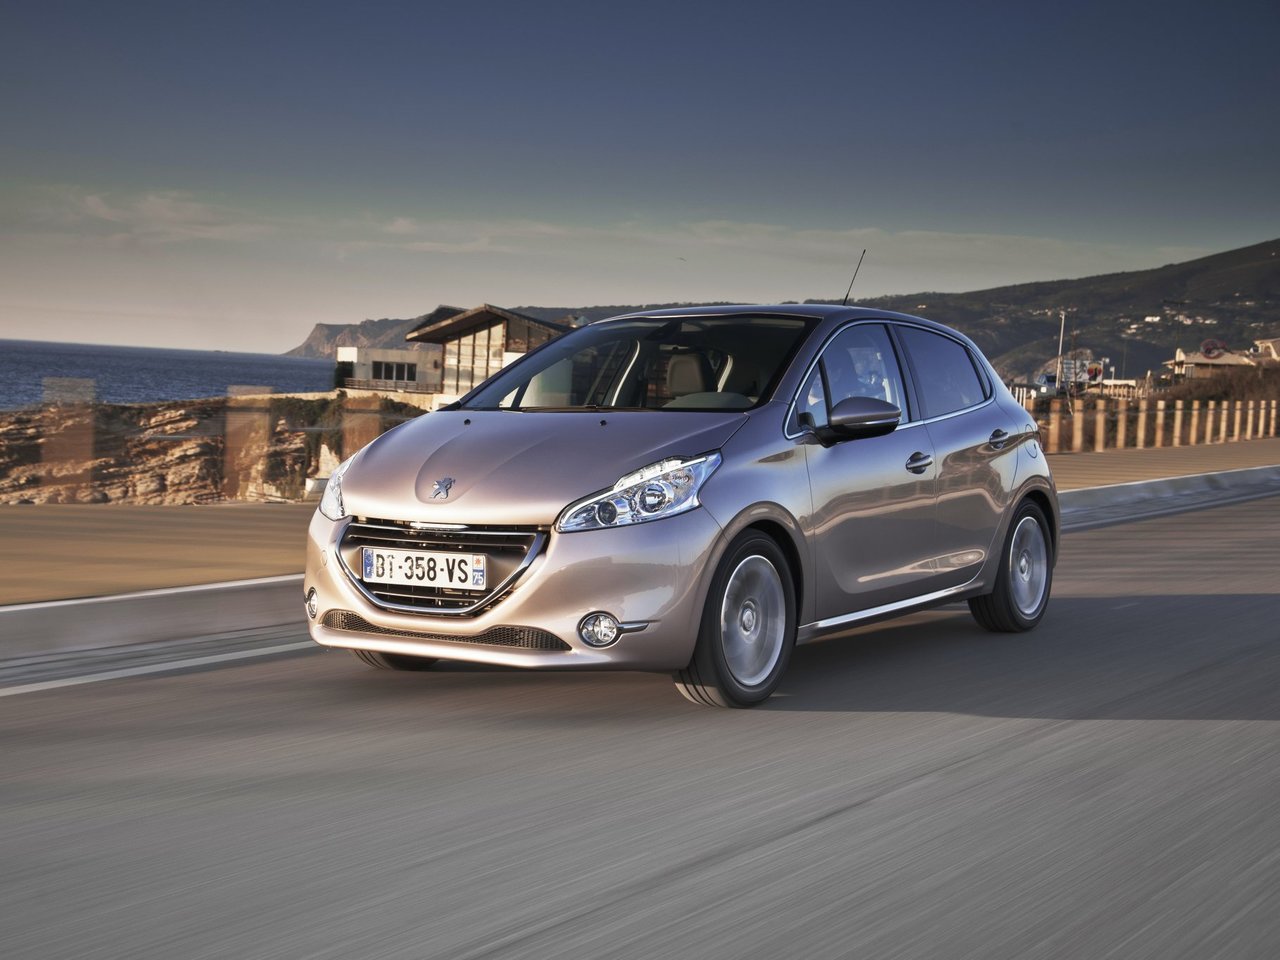 Снижаем расход Peugeot 208 на топливо, устанавливаем ГБО